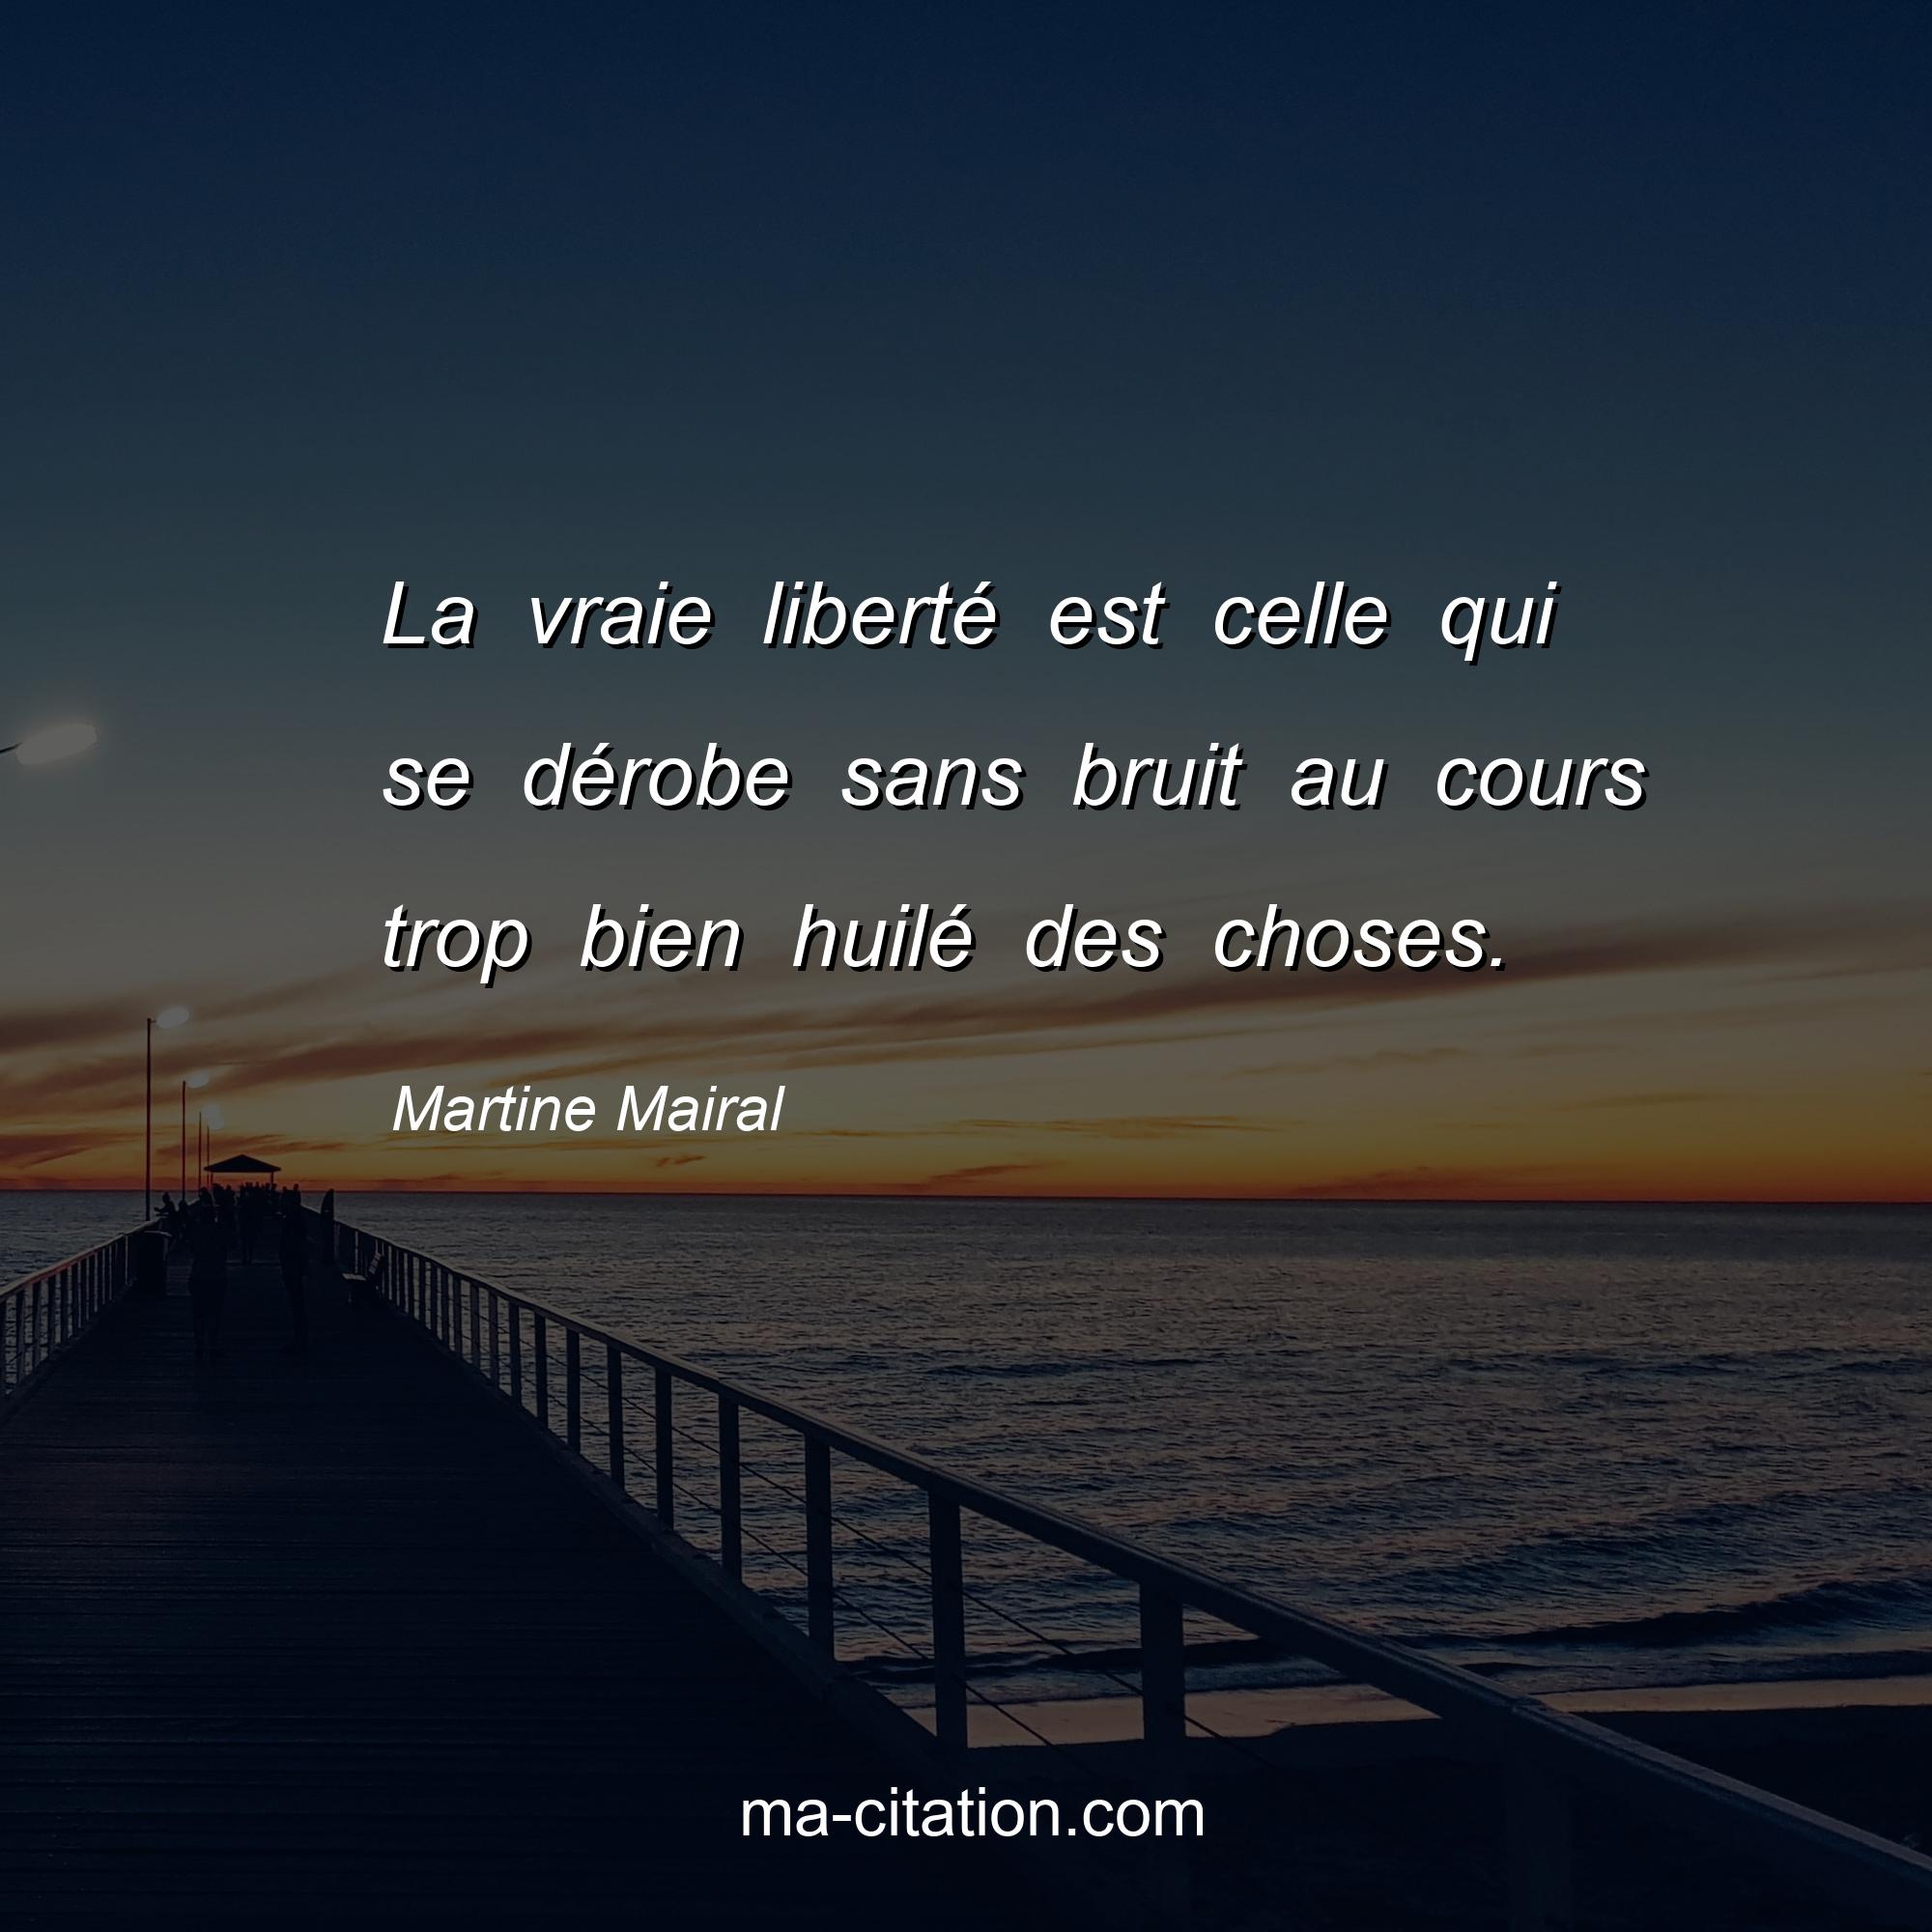 Martine Mairal : La vraie liberté est celle qui se dérobe sans bruit au cours trop bien huilé des choses.